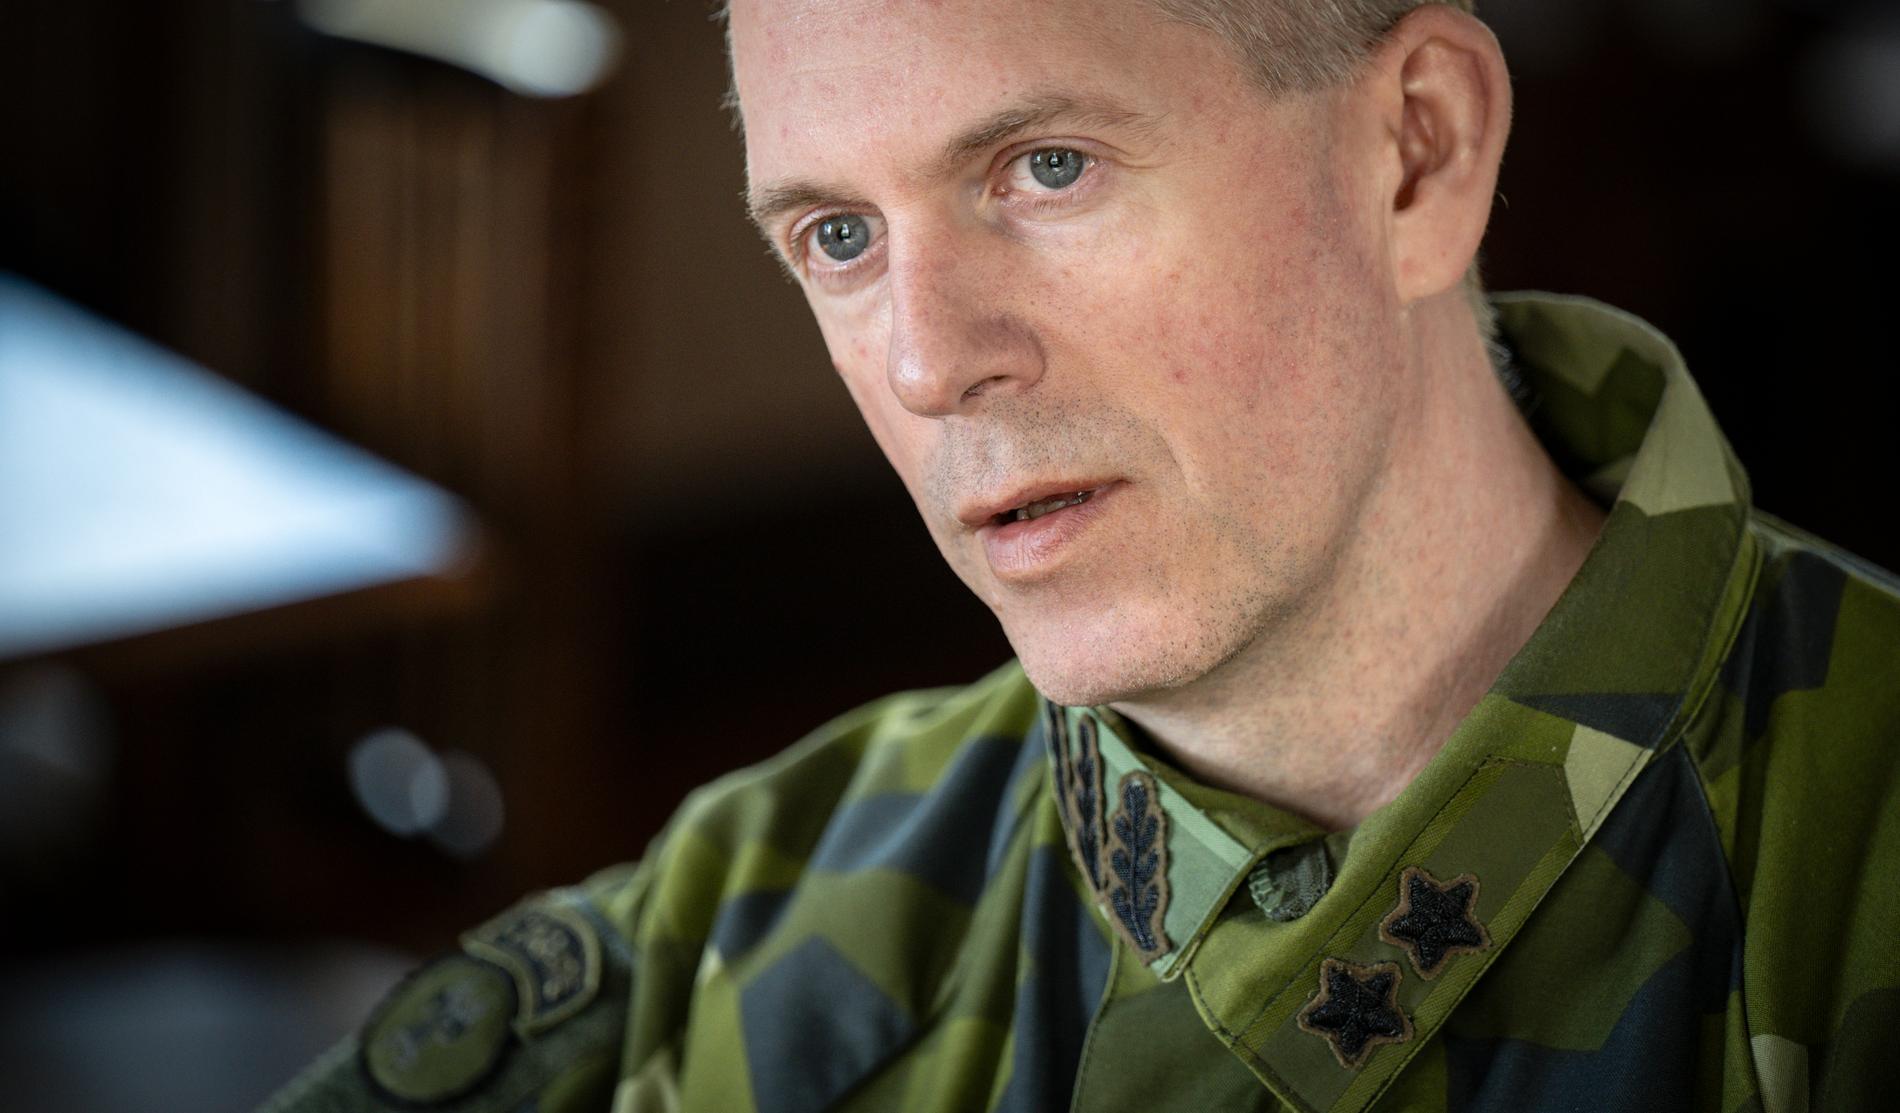 "Det kanske inte är samma äventyr som att åka till Afghanistan", säger Jonny Lindfors, arméchef och generalmajor.